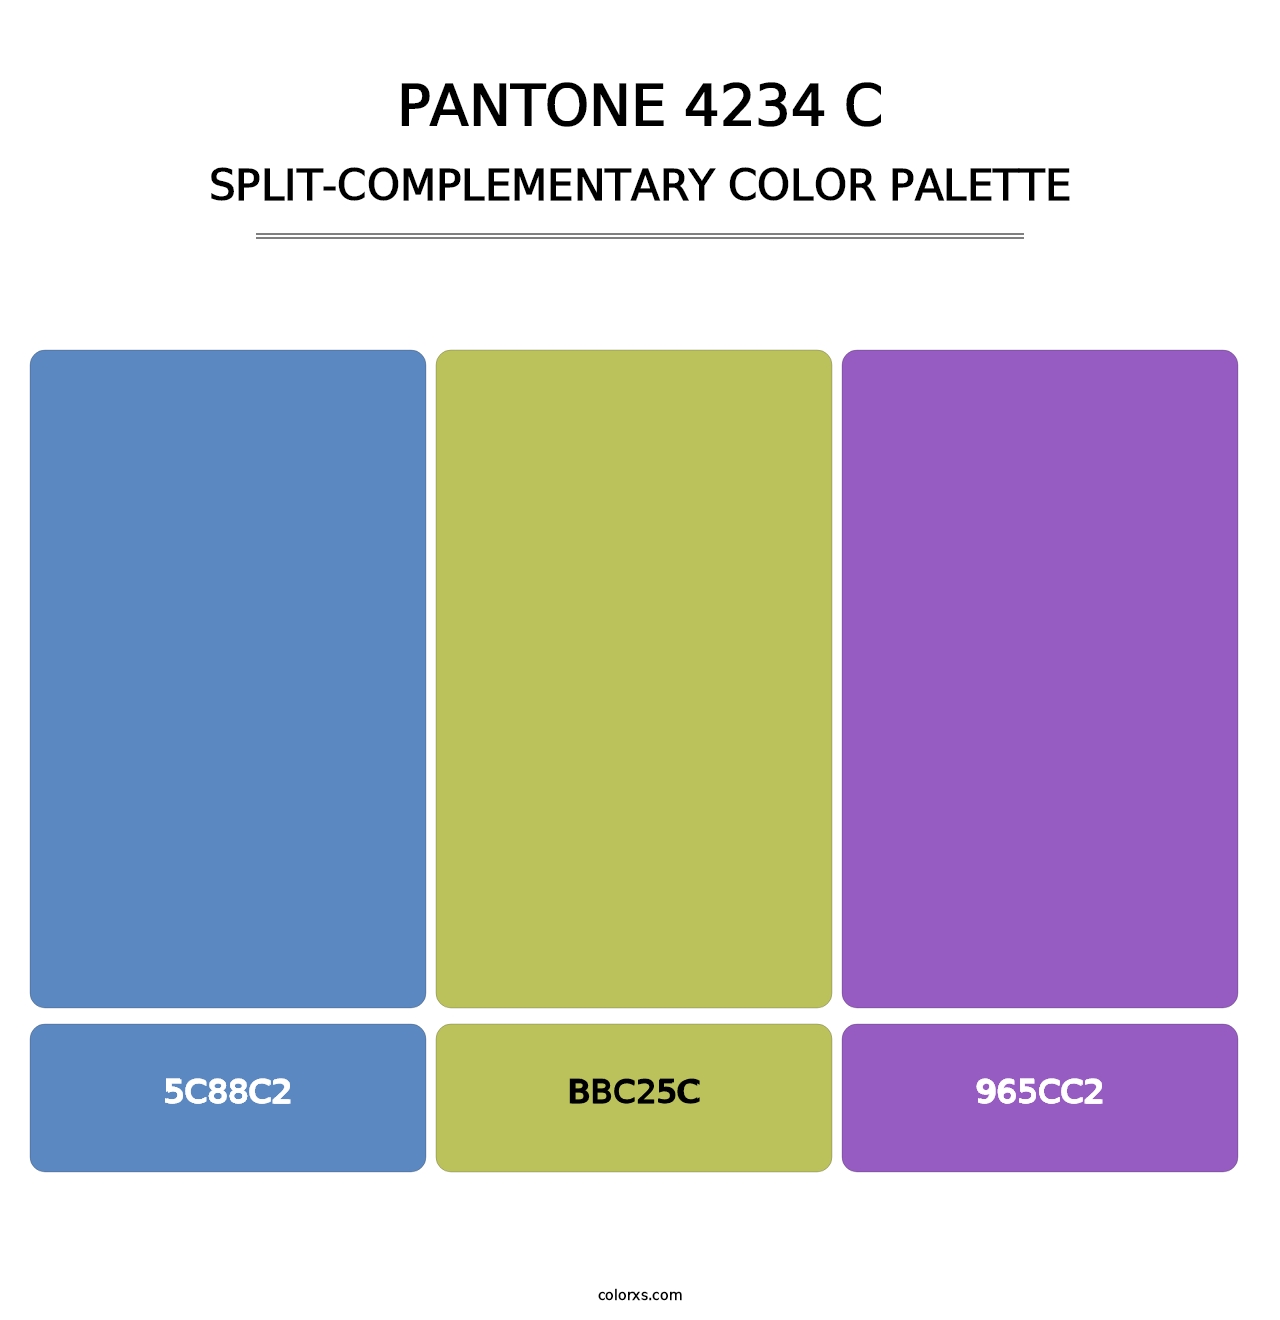 PANTONE 4234 C - Split-Complementary Color Palette